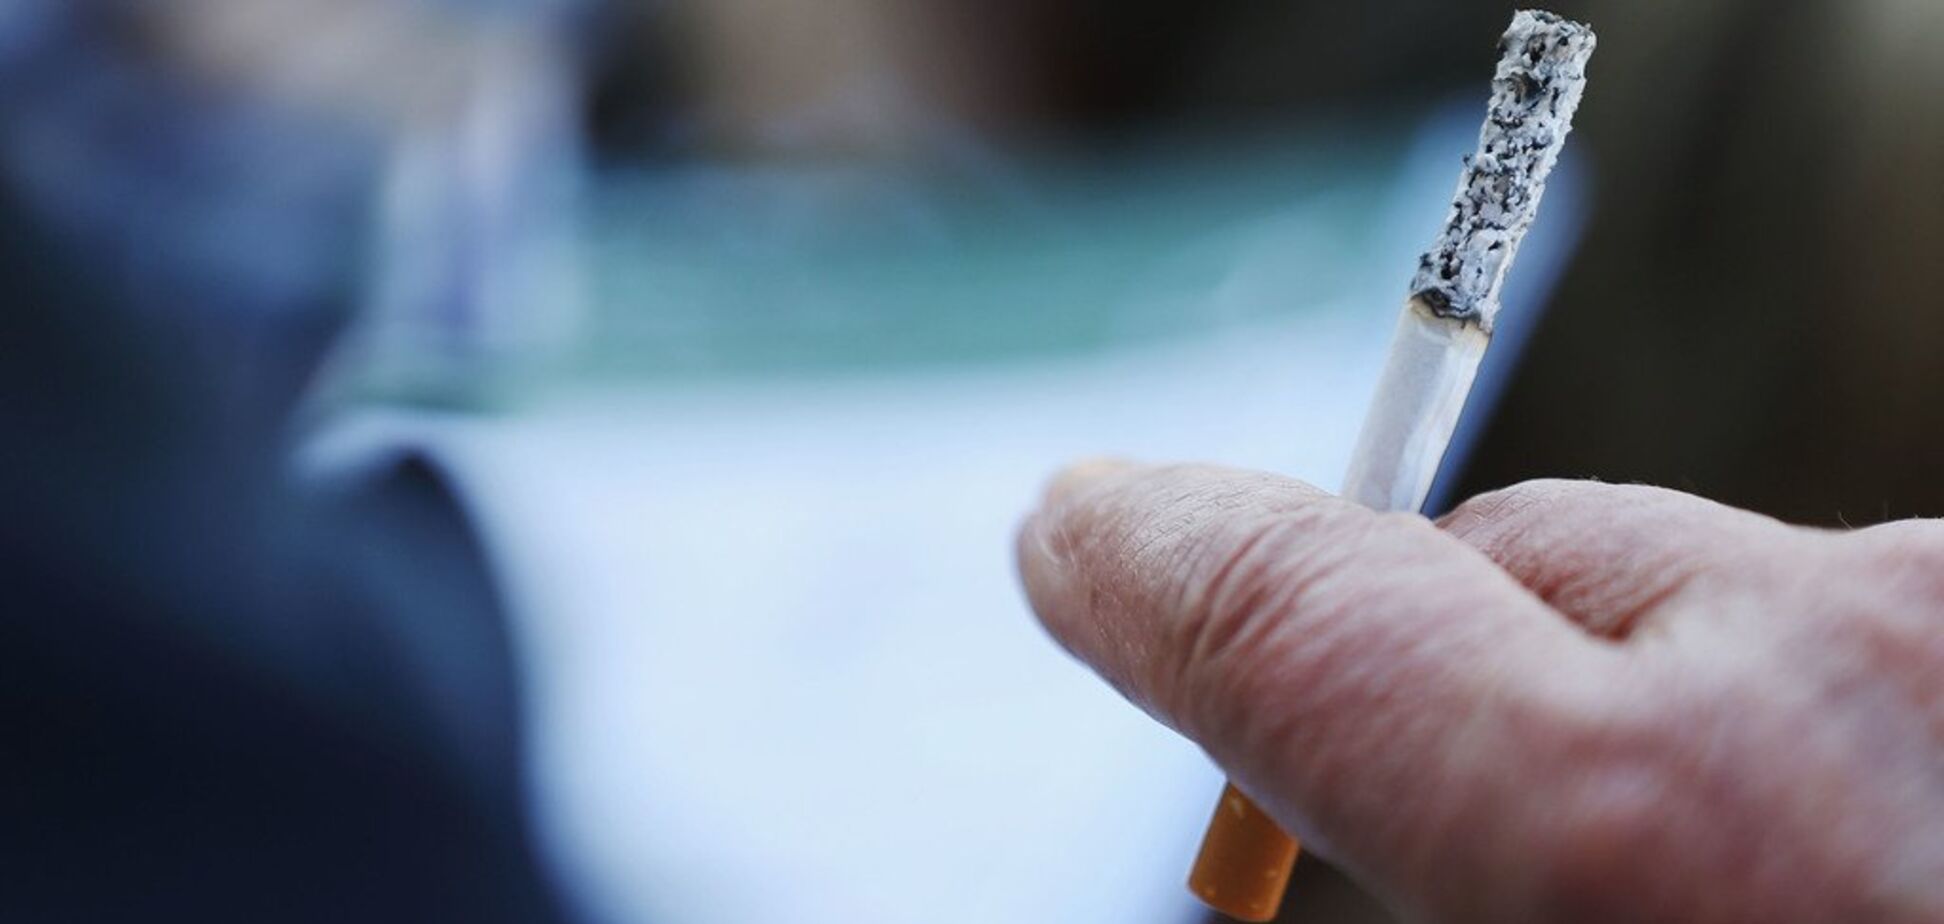 Рак и проблемы с дыханием: медики сравнили опасность от сигарет и кальянов 